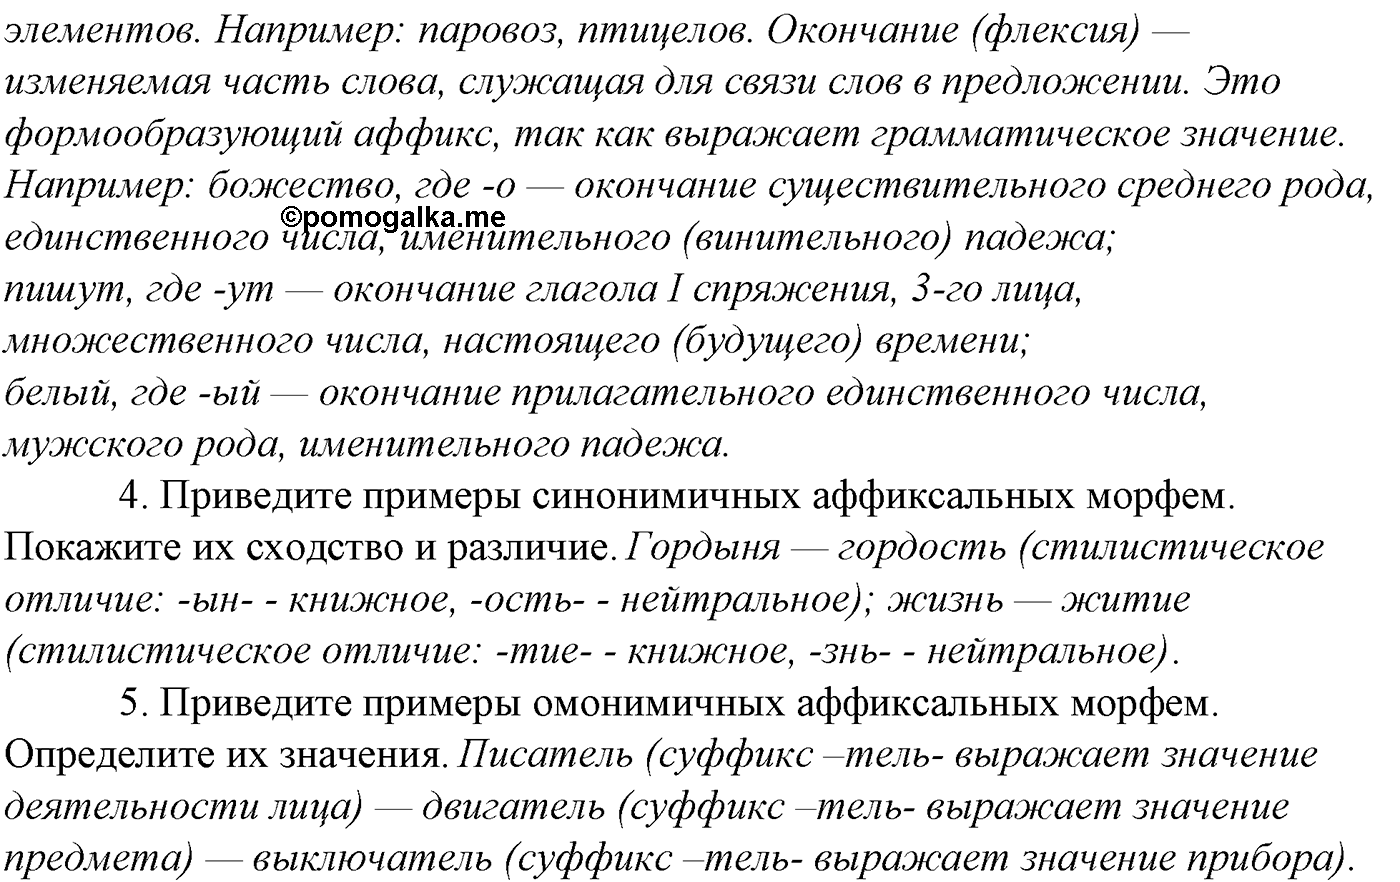 Вопросы для повторения русский язык 10-11 класс Гольцова